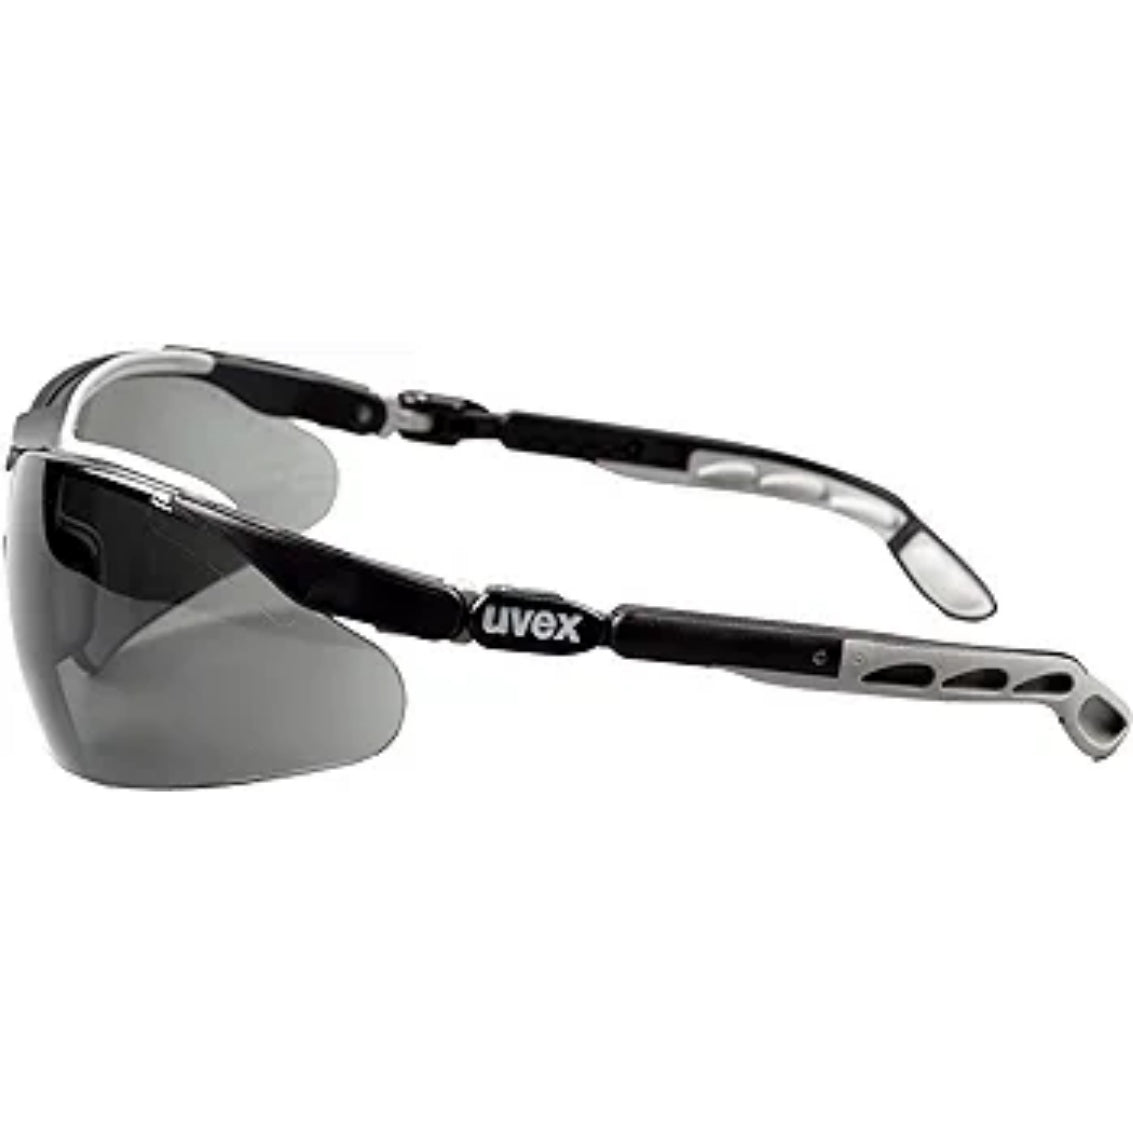 Uvex I-VO Grey Safety Glasses 9160-076 UV400 Protection